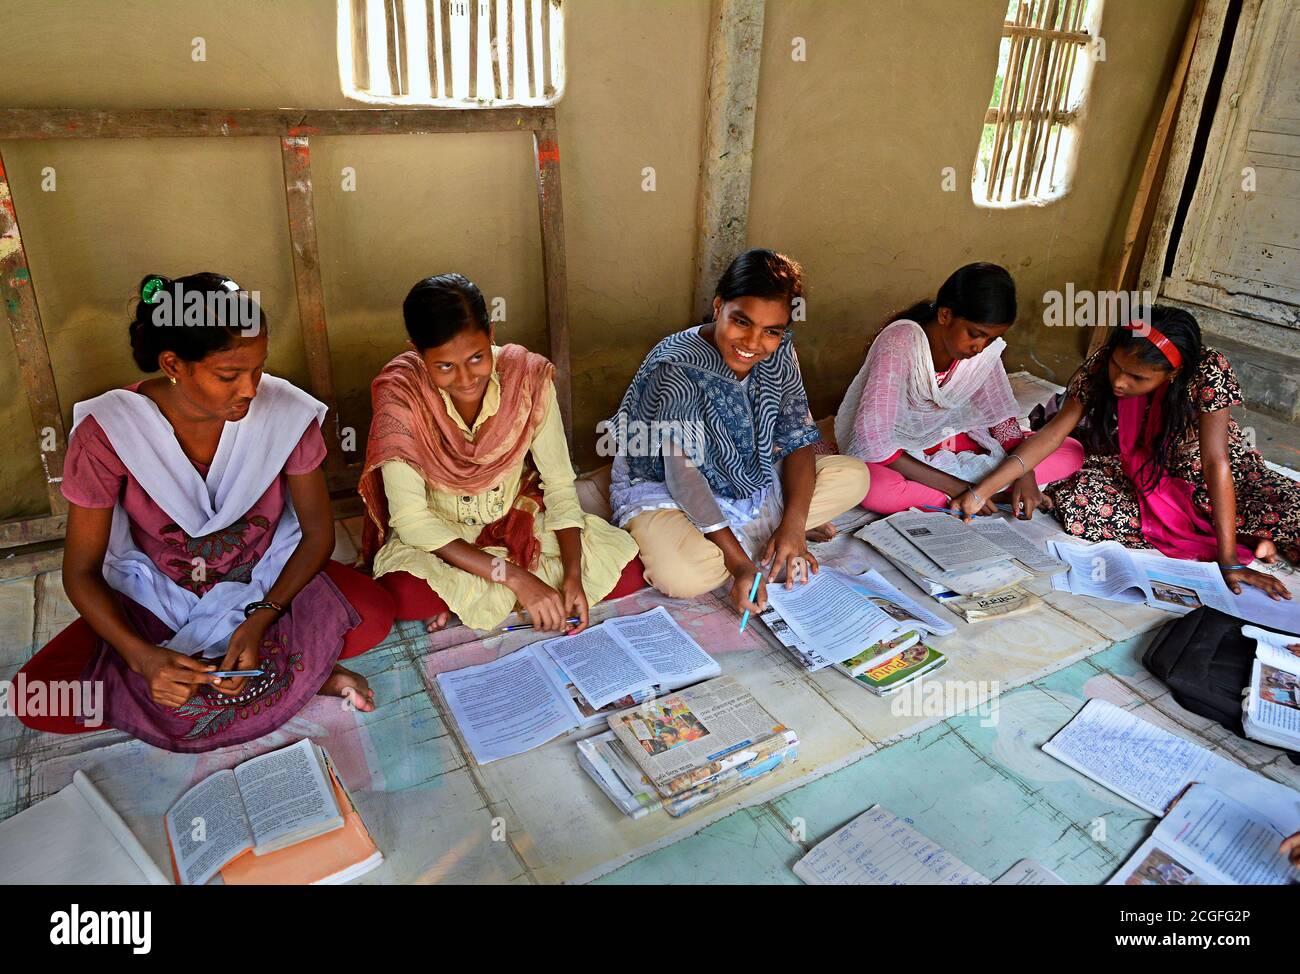 Le donne sono il futuro dell'India, gli studenti stanno leggendo un libro nella stanza della lezione privata nel remoto villaggio dell'India. Foto Stock